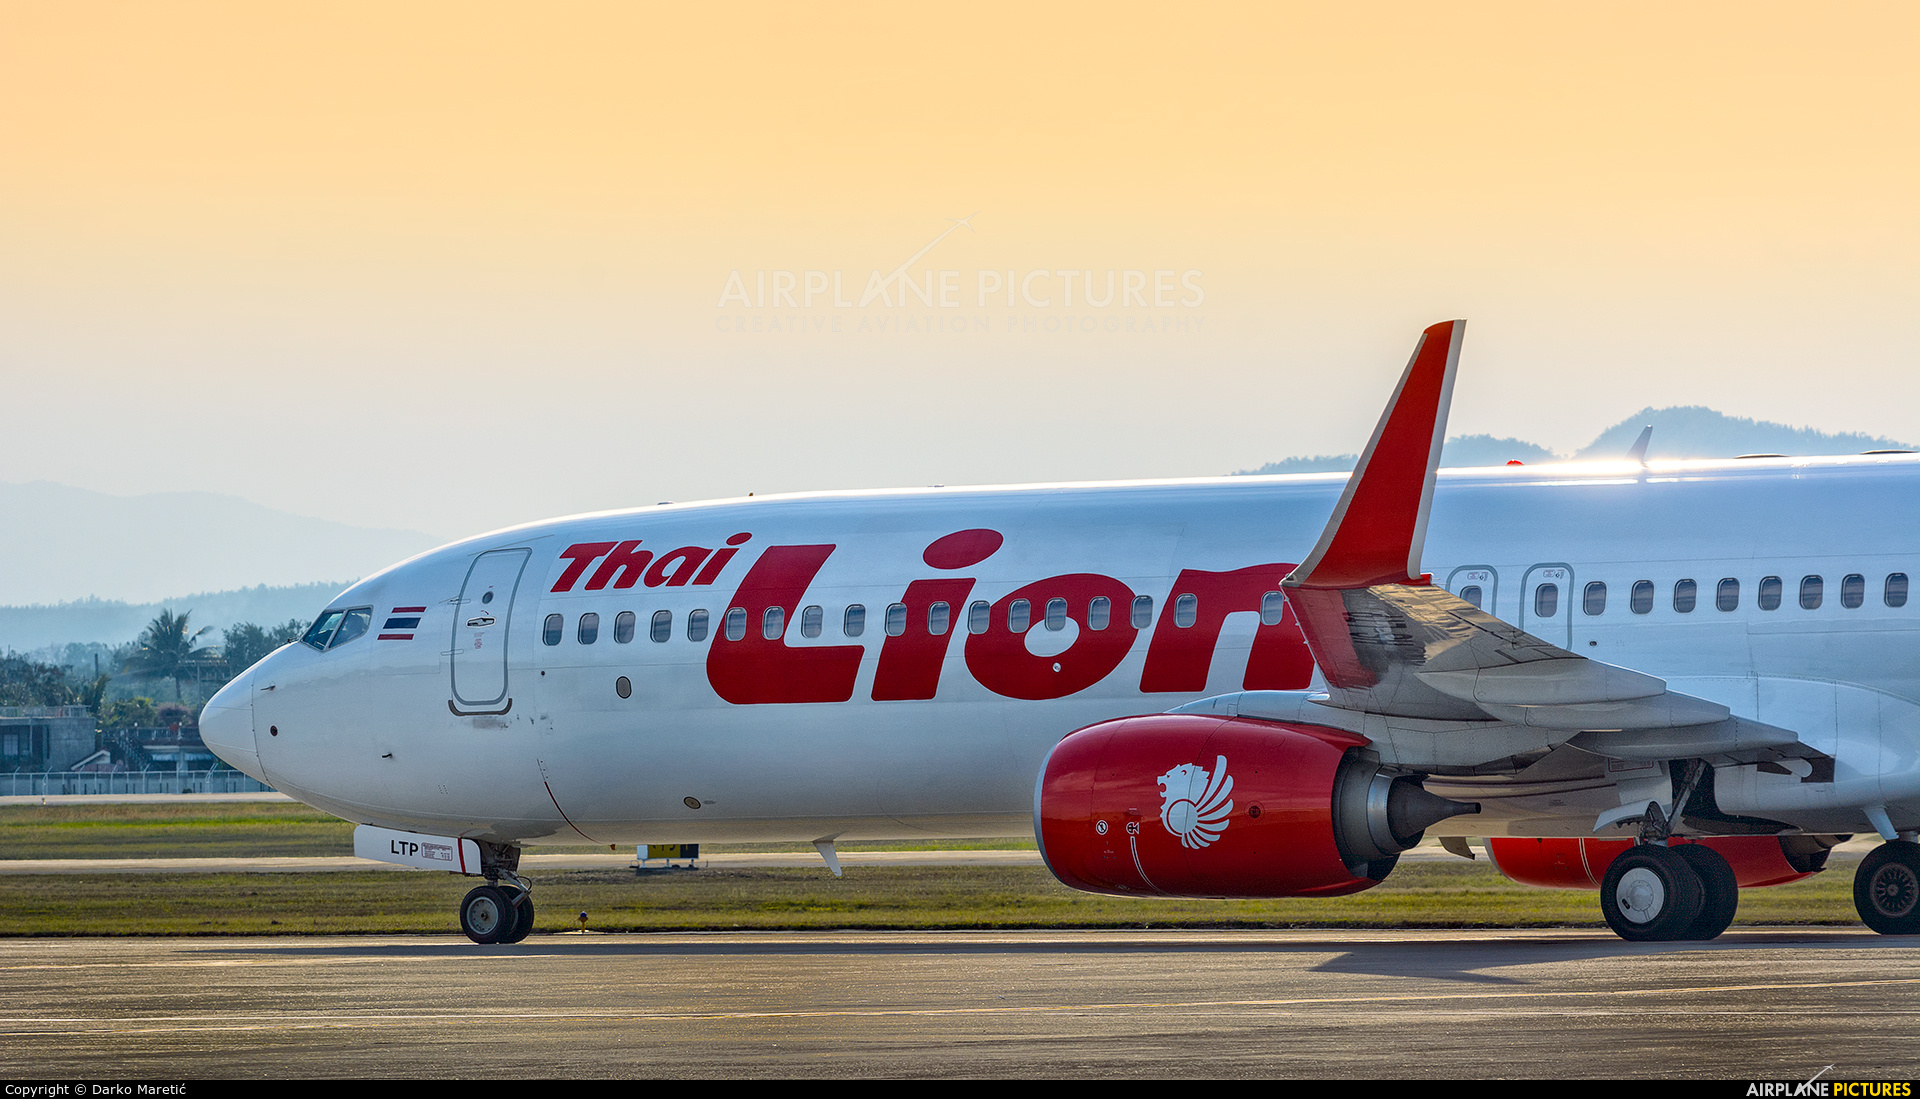 Lion Air, HS-LTV, Thai Lion Air, Chiang Mai, 1920x1100 HD Desktop